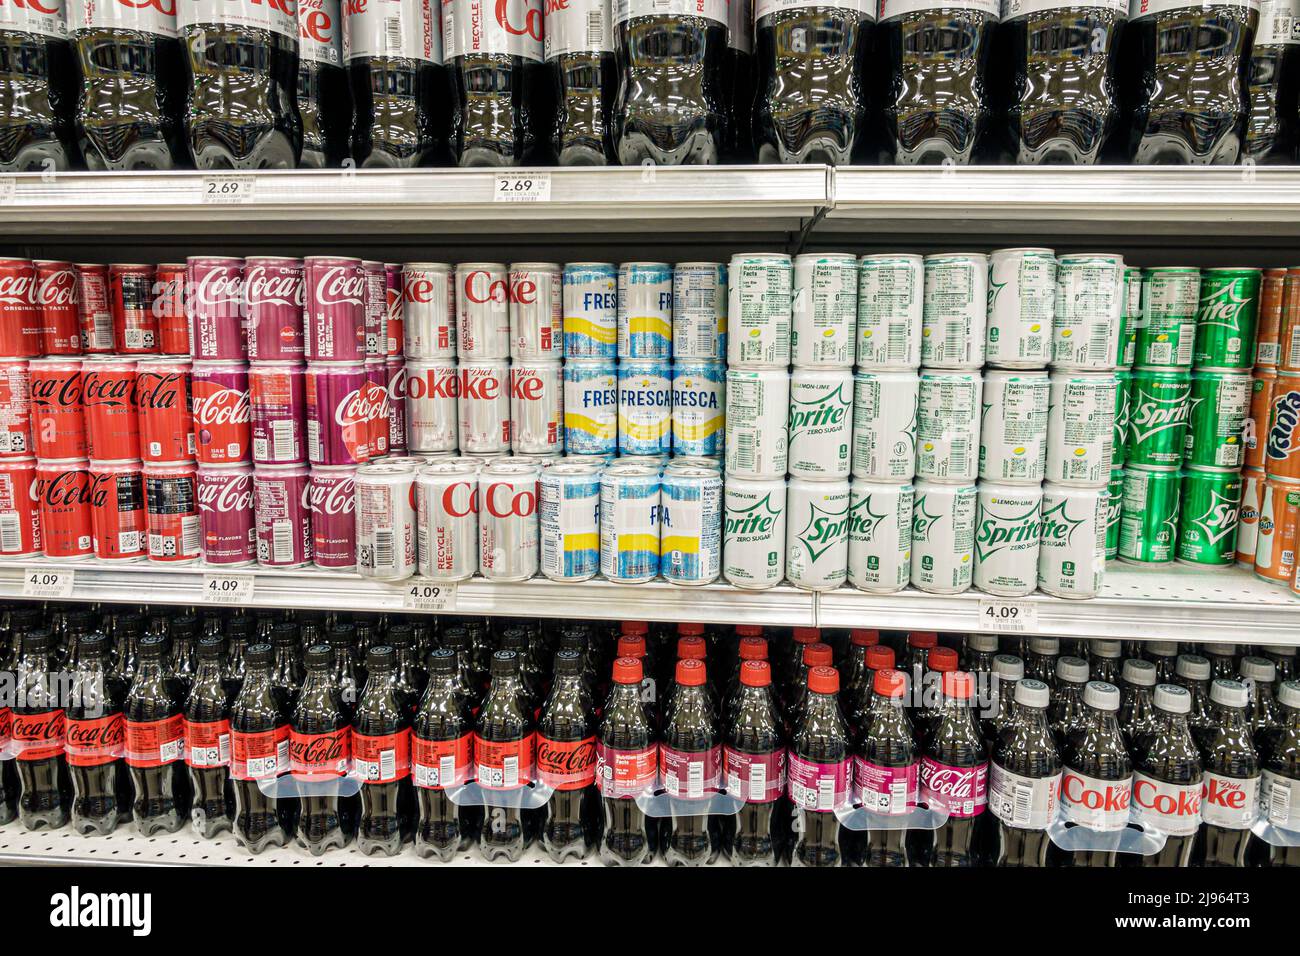 Miami Beach Florida, Publix tienda de comestibles supermercado mostrar venta estantes dentro de estanterías, productos Coca Cola refrescos refrescos latas de refrescos botellas, Foto de stock